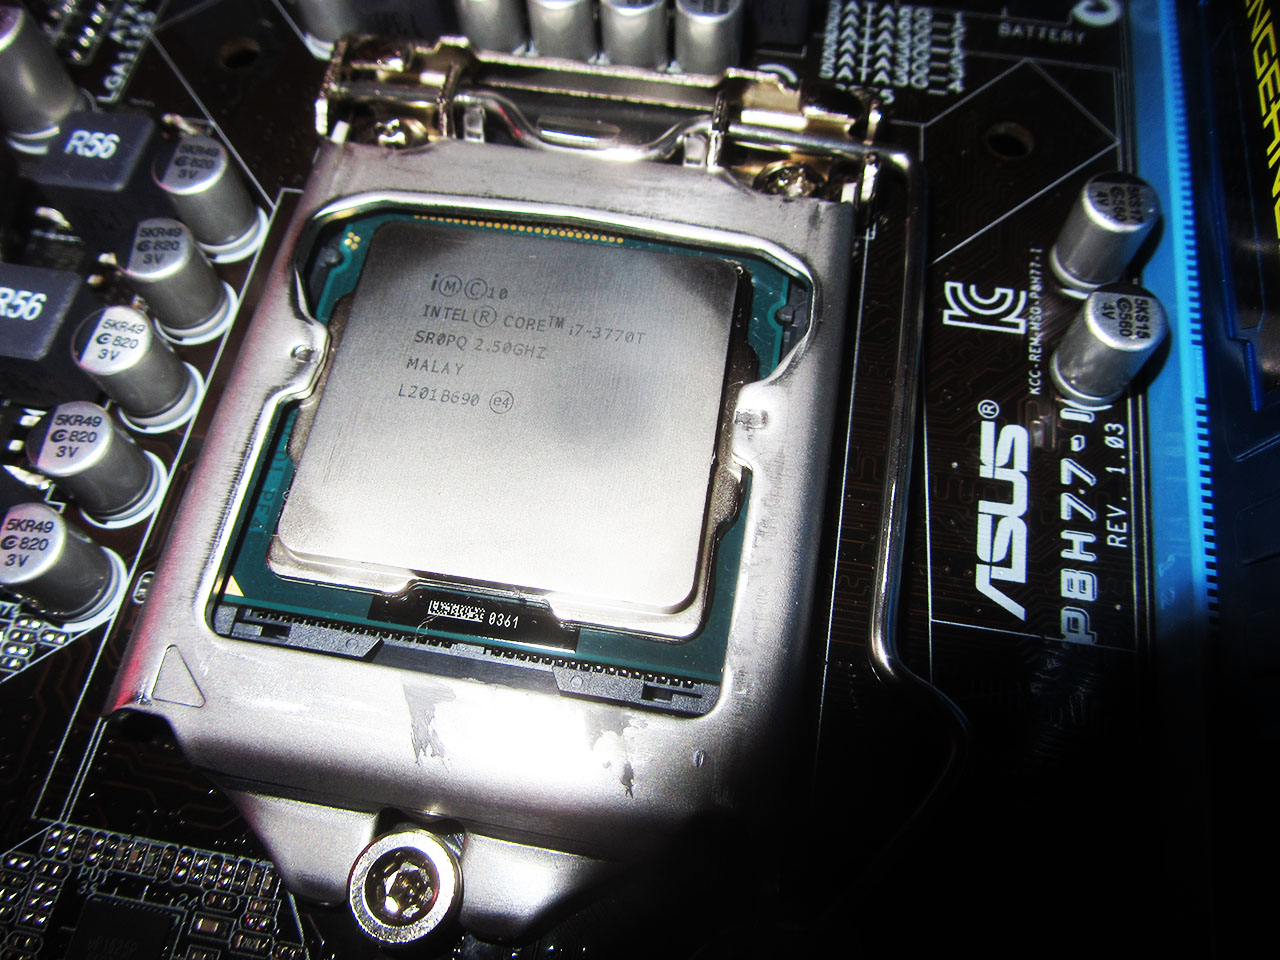 Intel Core i7 3770T